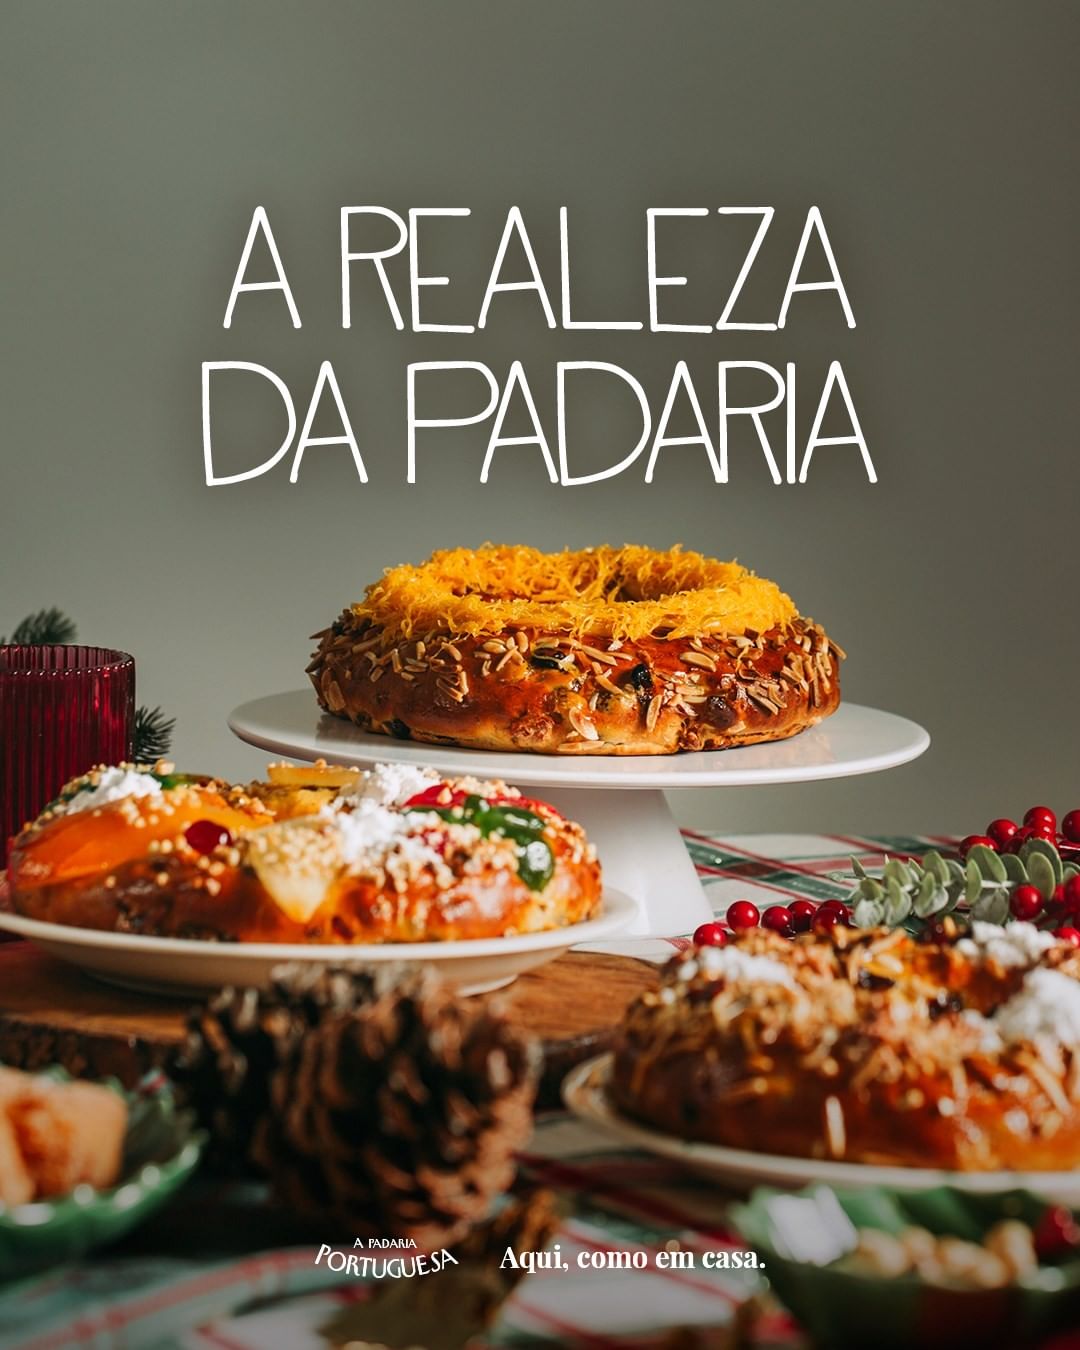 Bolo Rainha – Foto de Arte Antiga - Padaria, Pastelaria & Confeitaria,  Évora - Tripadvisor